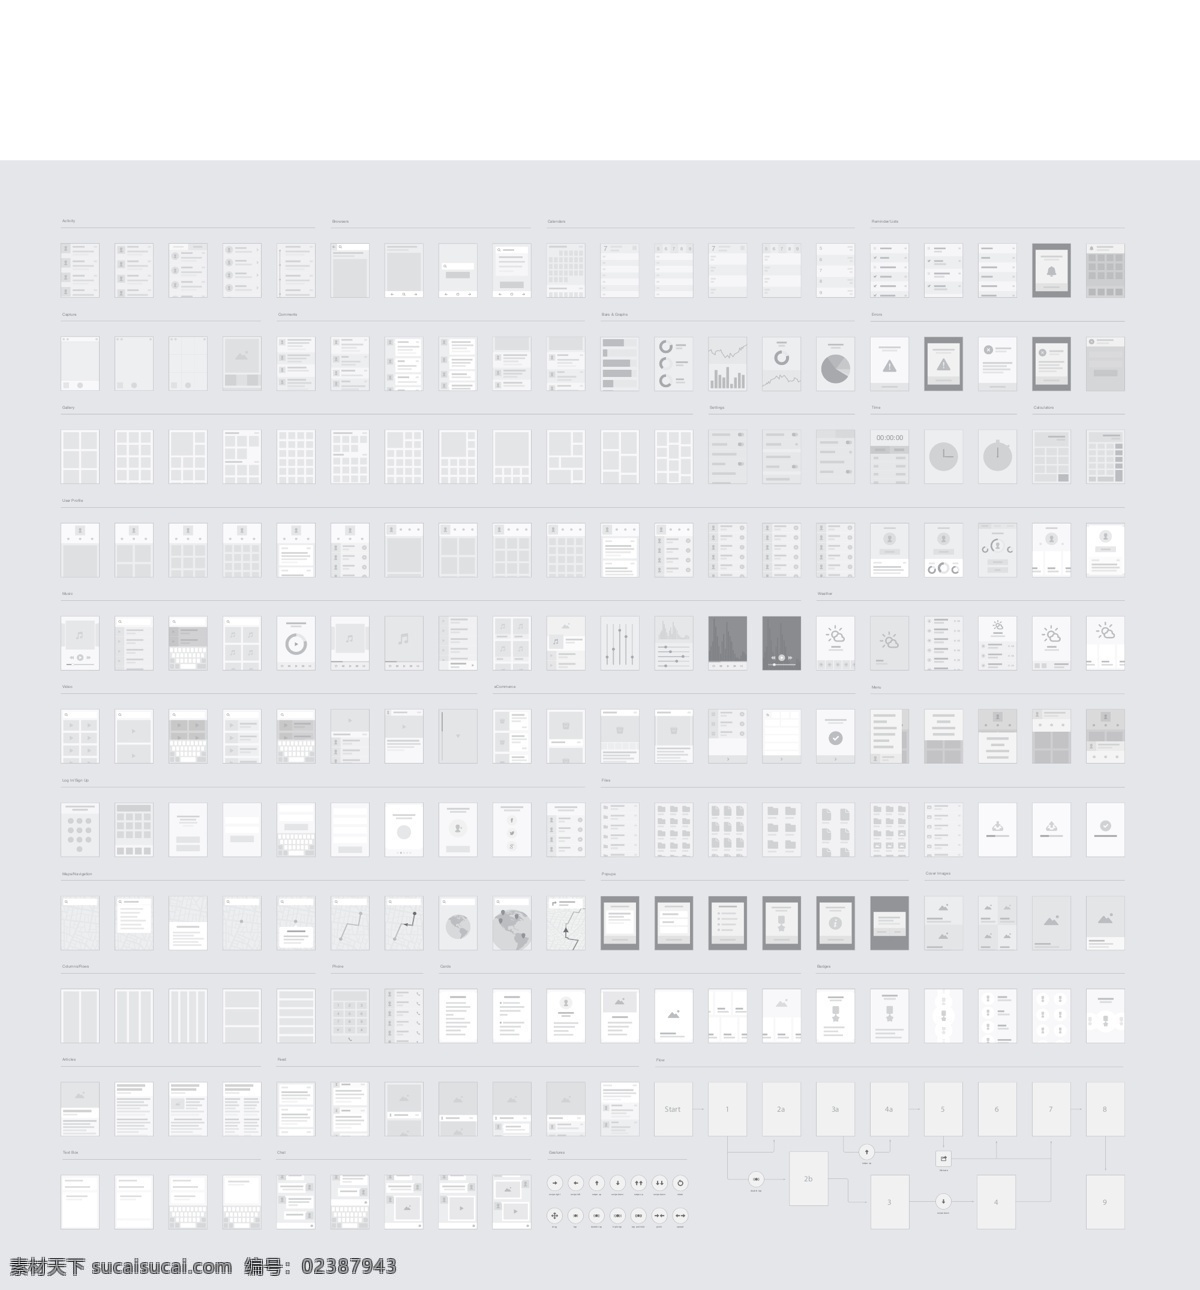 信息盒结构 ui设计 界面版式 版式设计 界面 界面菜单 界面图片素材 app素材 扁平设计 白色